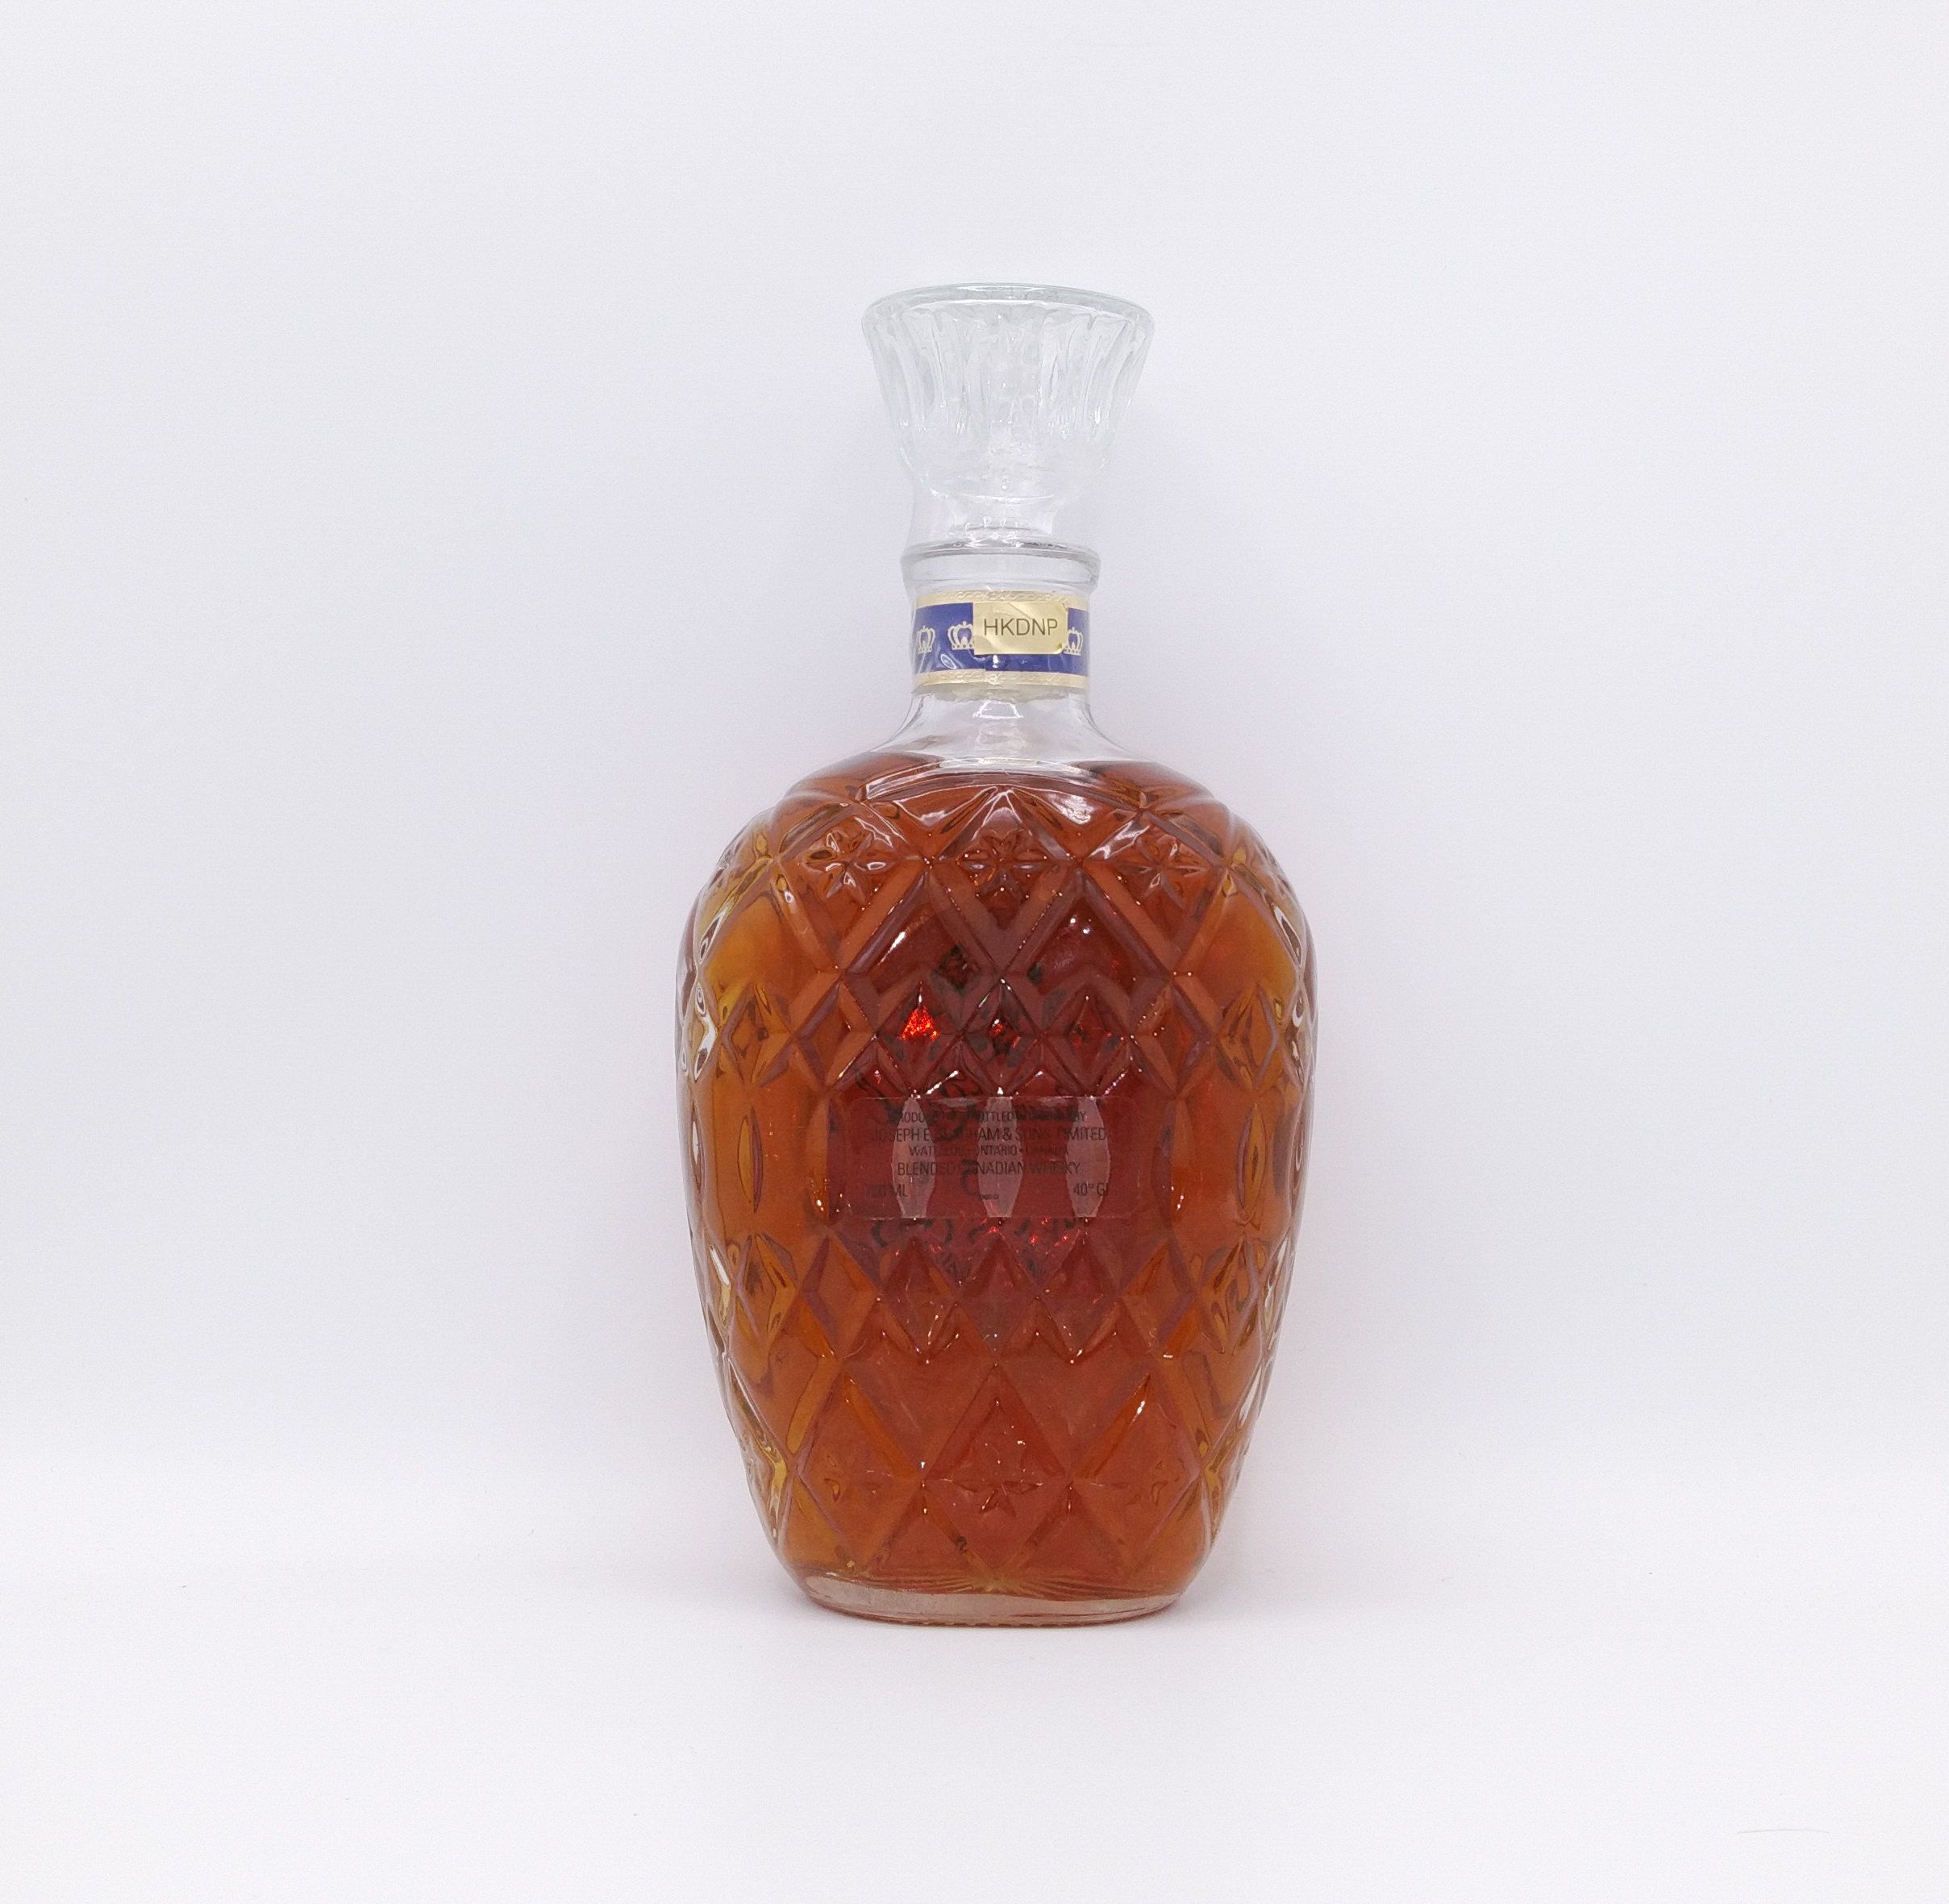 クラウンローヤル 15年 Crown Royal 15years old | Nostalgic liquor - Buyee